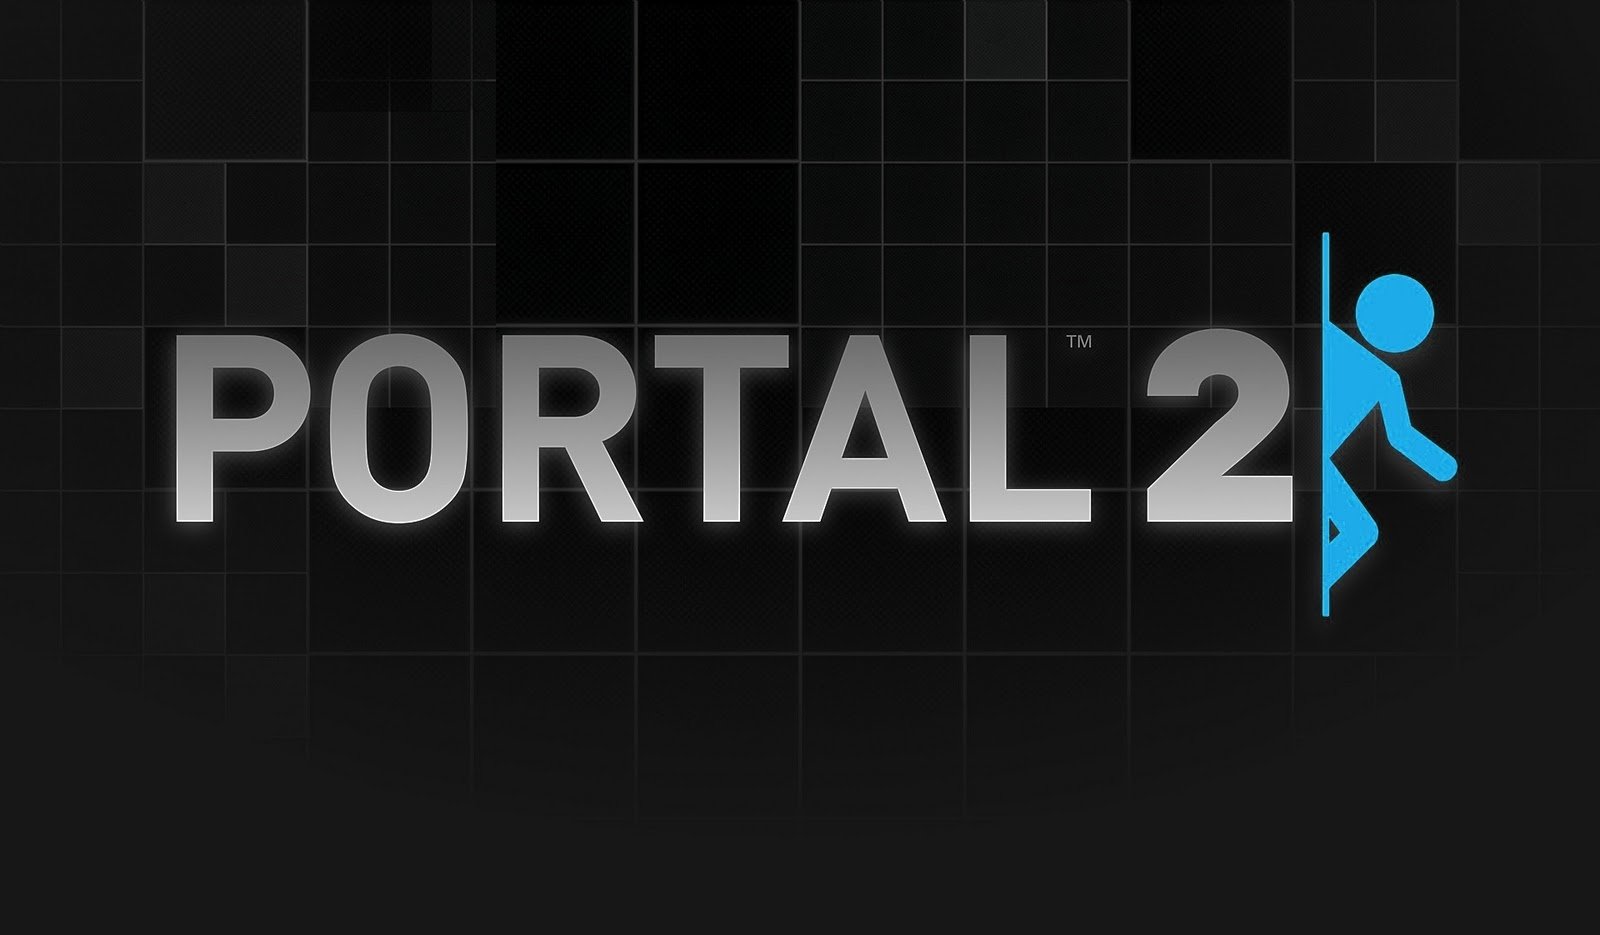 portal 2 wallpapers portal 2 es un juego desarrollado por valve donde 1600x935